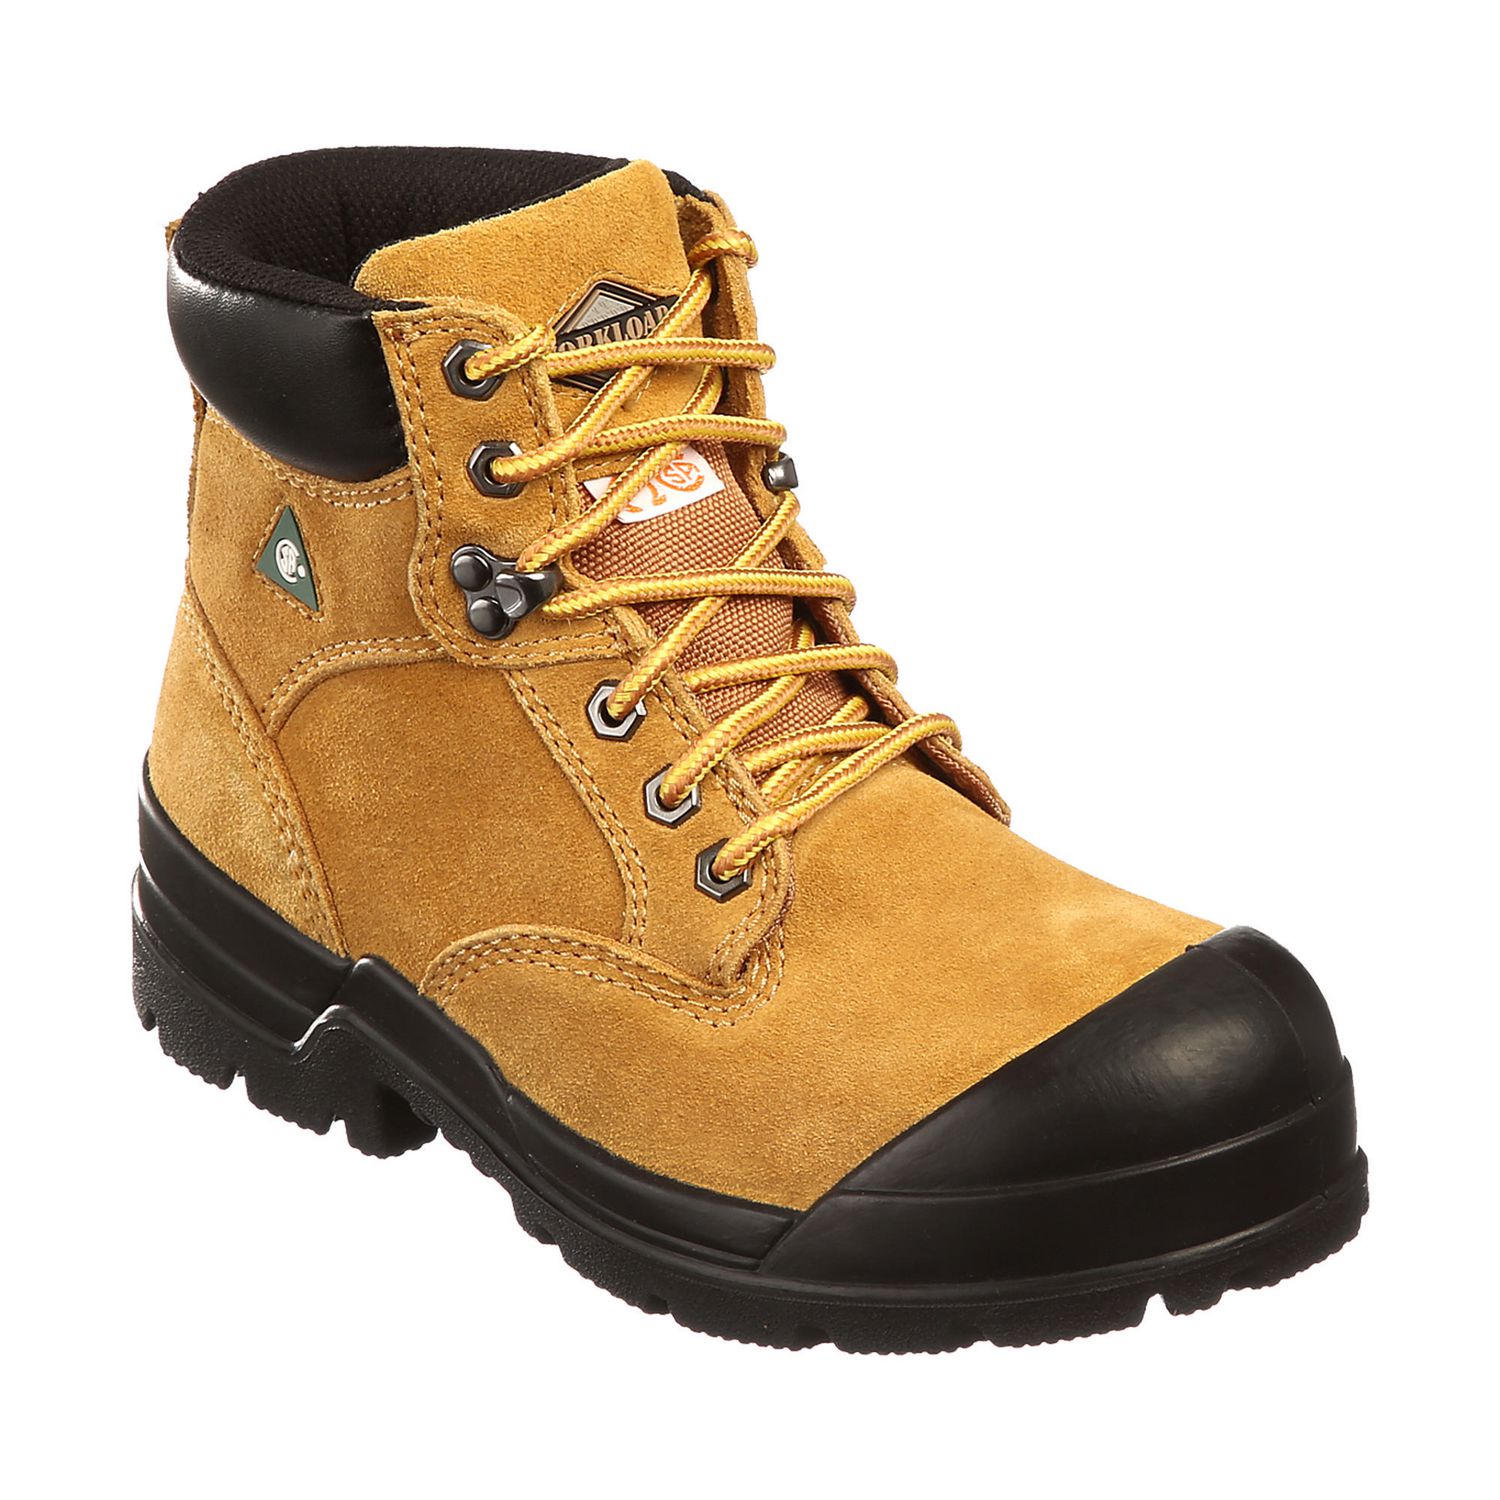 Workload Women's Seahawk Steel Toe Safety Boots | Walmart Canada